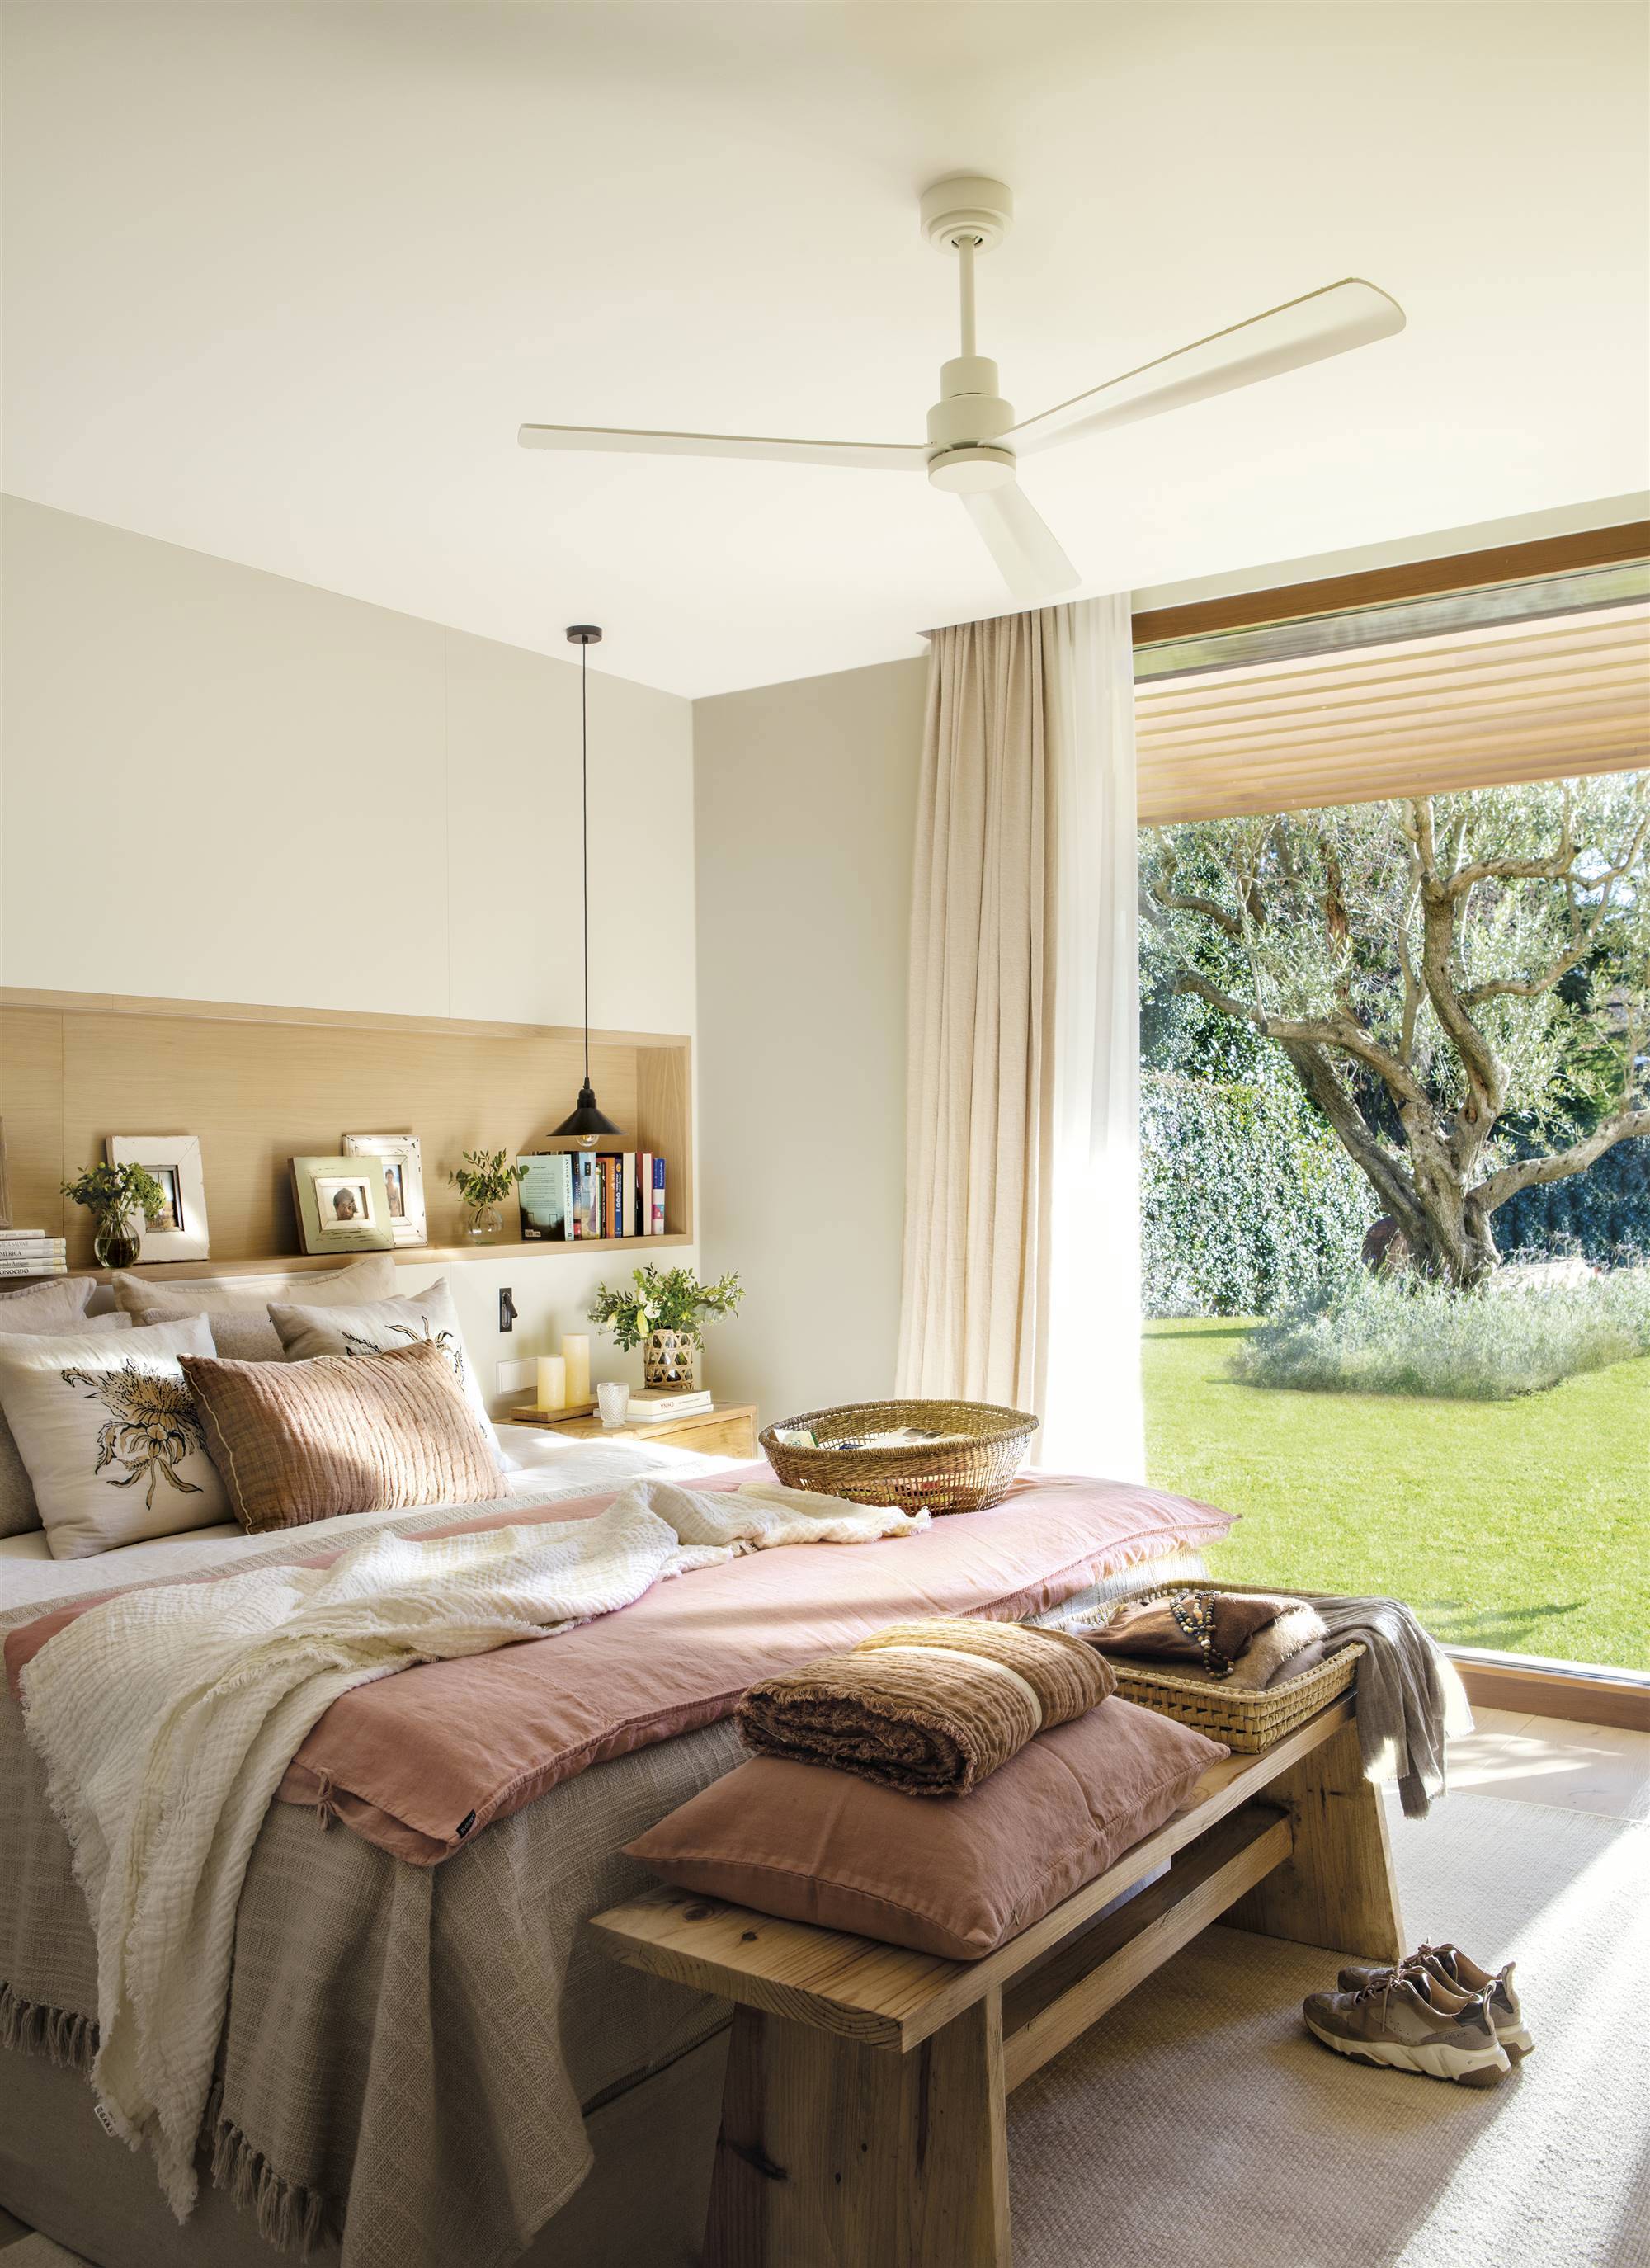 Dormitorio de primavera con cabecero en hornacina y ventilador de techo.